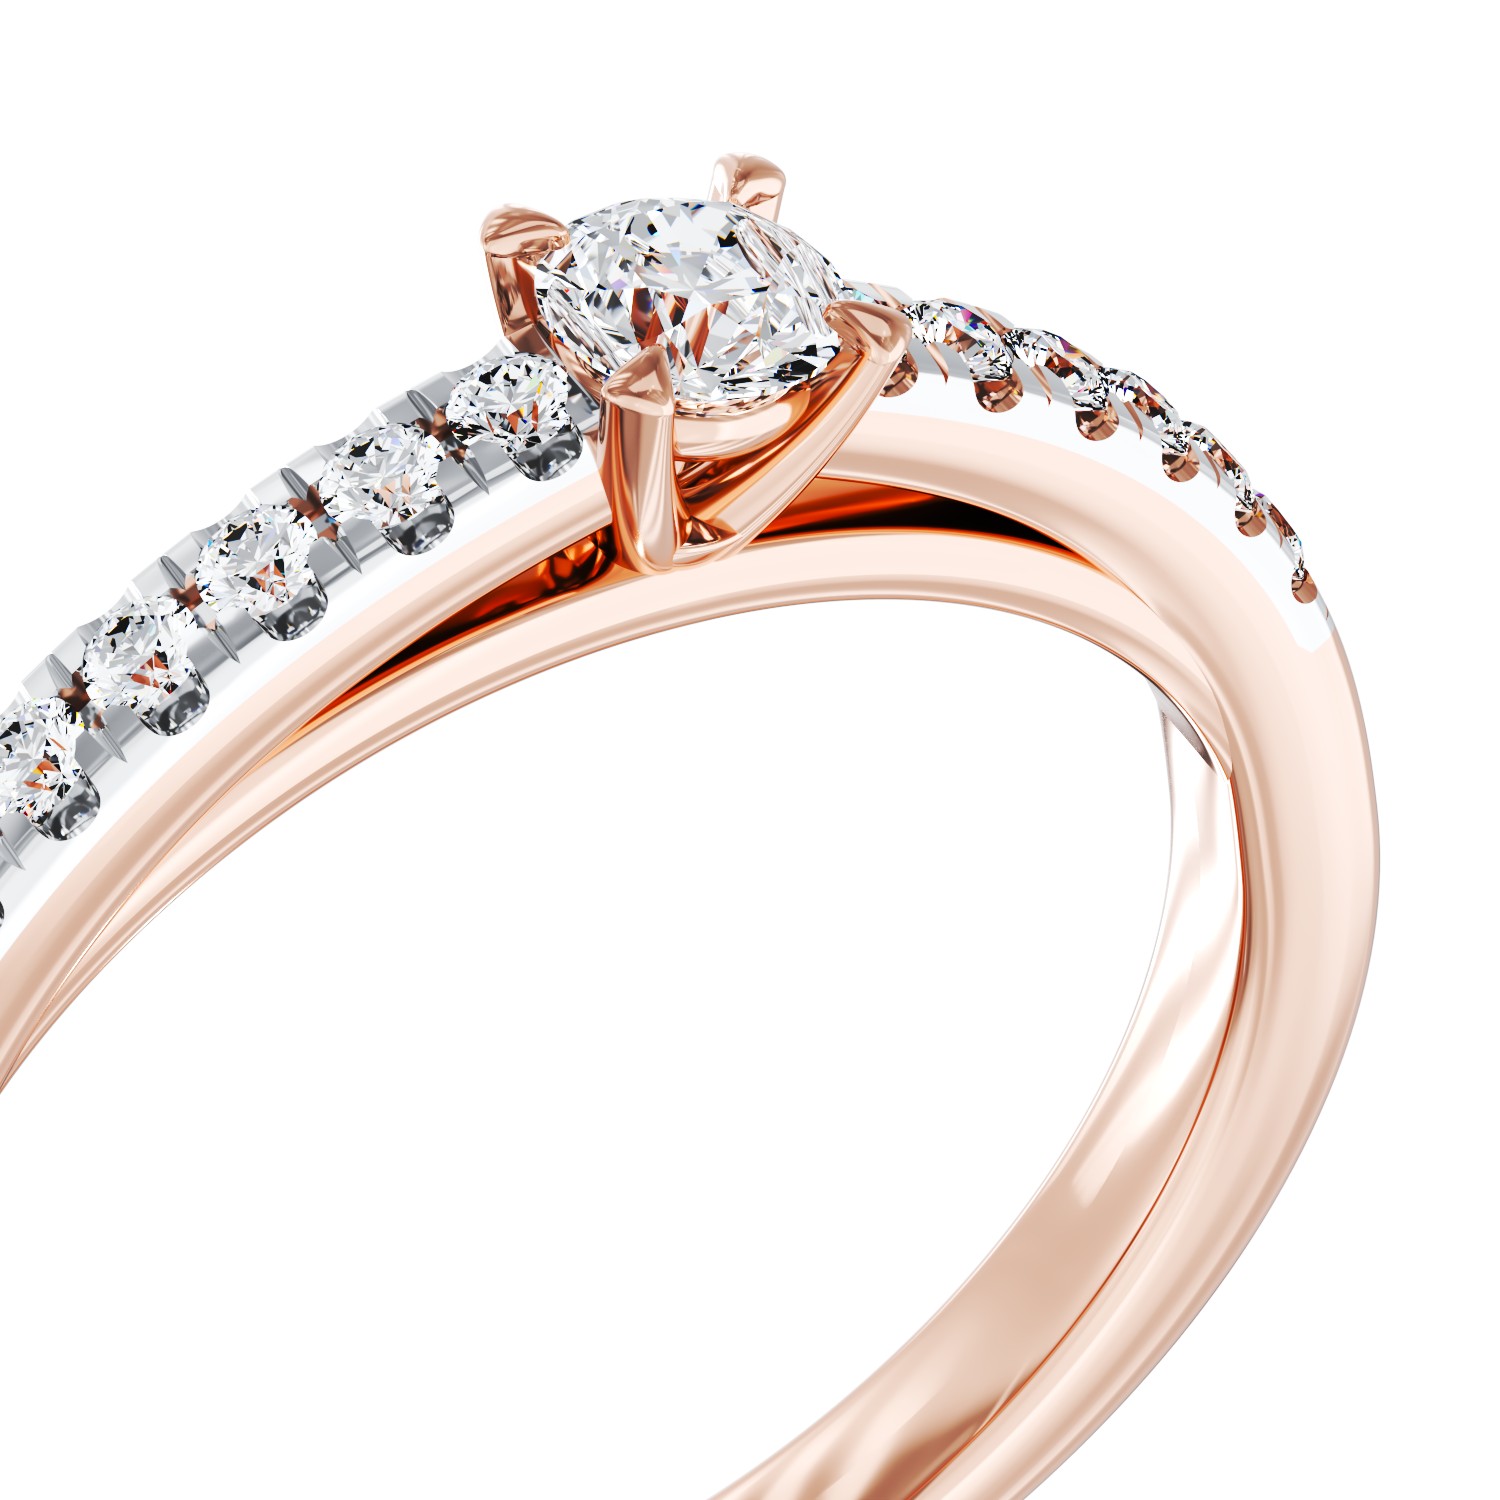 Eljegyzési gyűrű 18K-os rózsaszín aranyból 0,28ct gyémánttal és 0,12ct gyémánttal. Gramm: 2,8